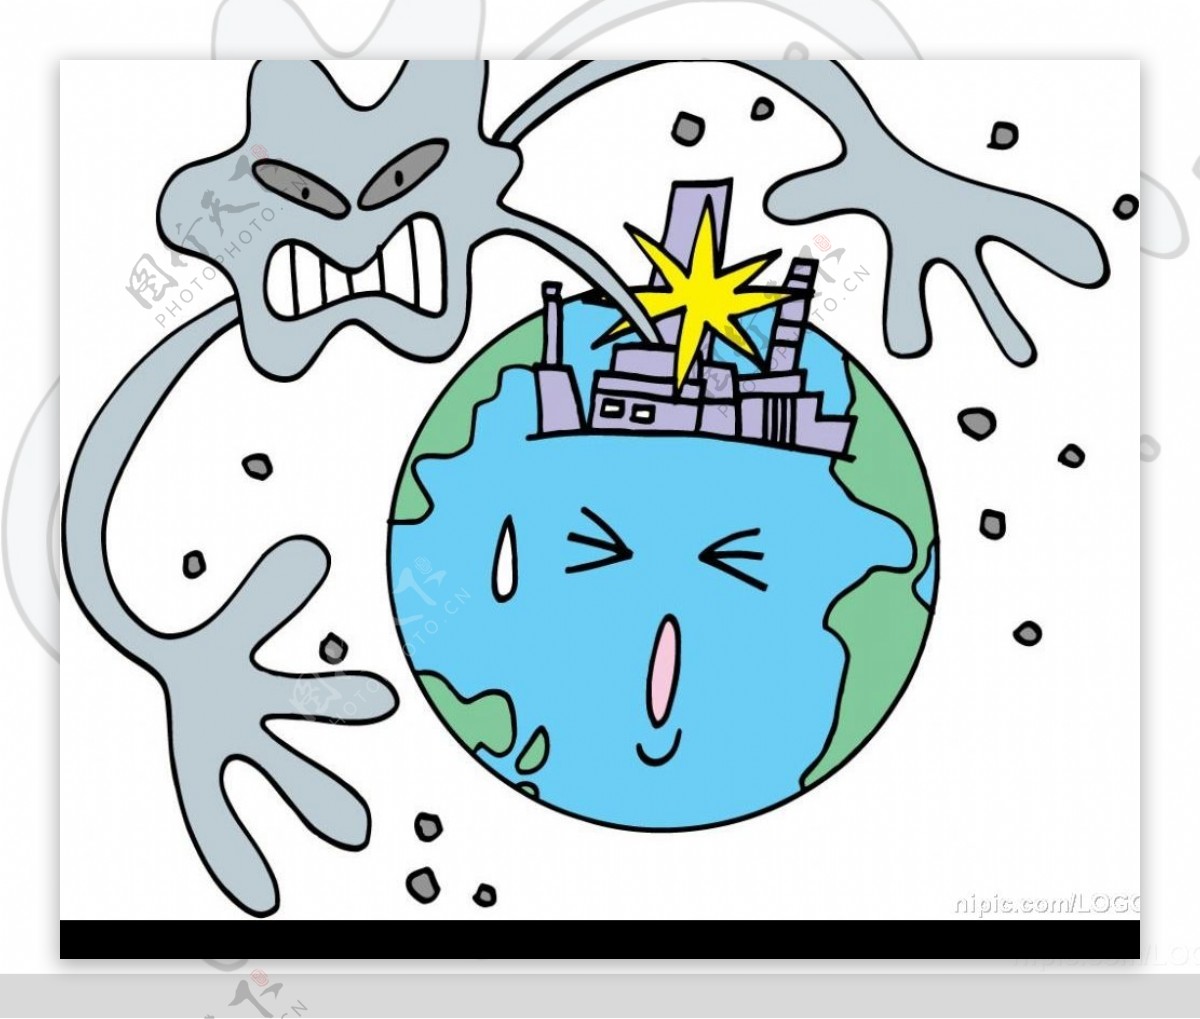 环境污染主题漫画图片